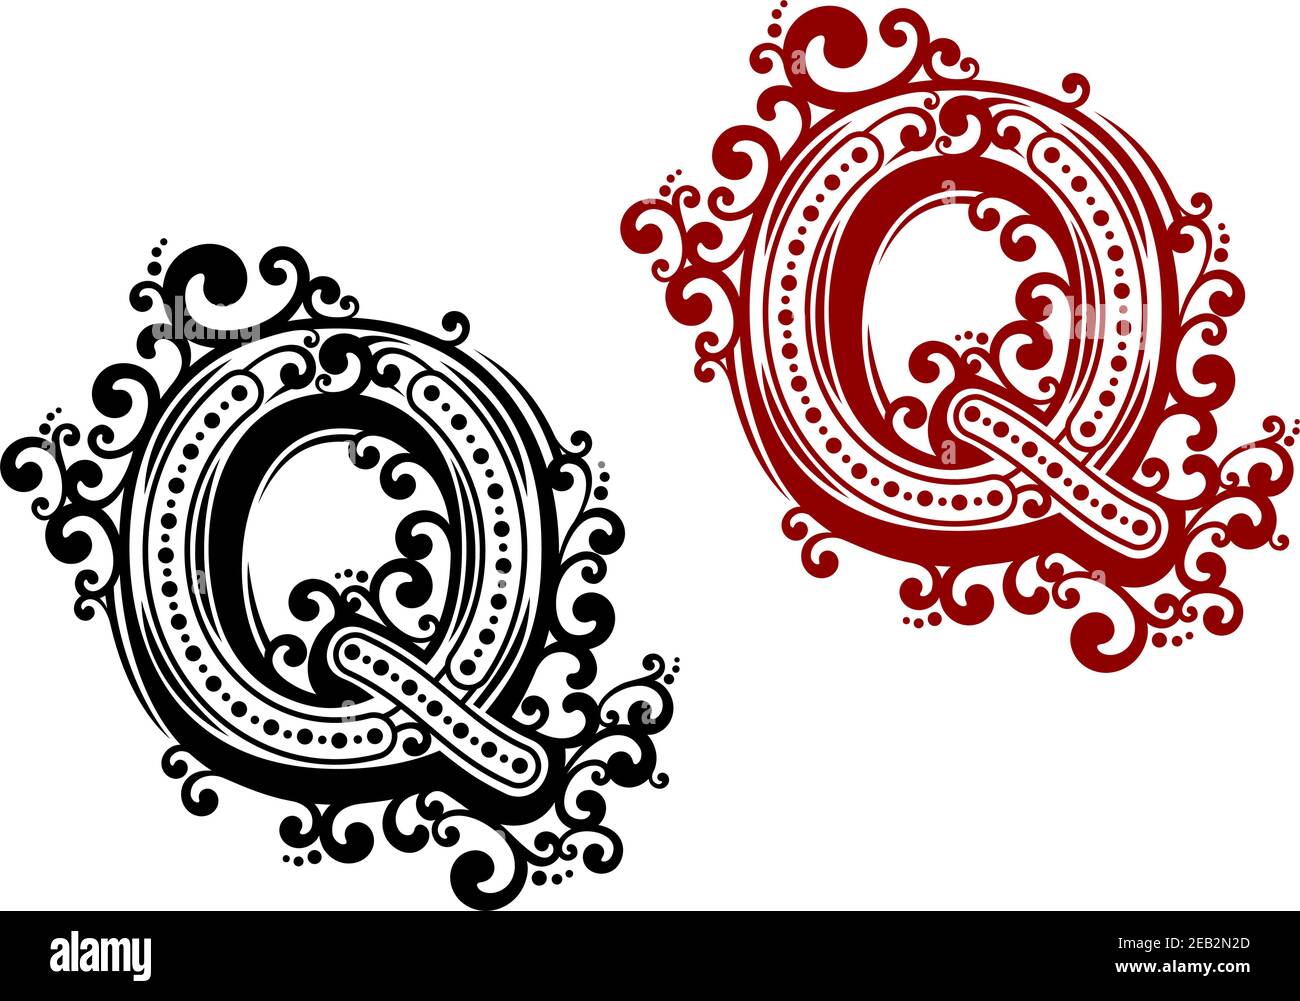 Lettera maiuscola Q stilizzata in stile retrò nei colori nero e rosso con elementi floreali per invito o monogramma design Illustrazione Vettoriale